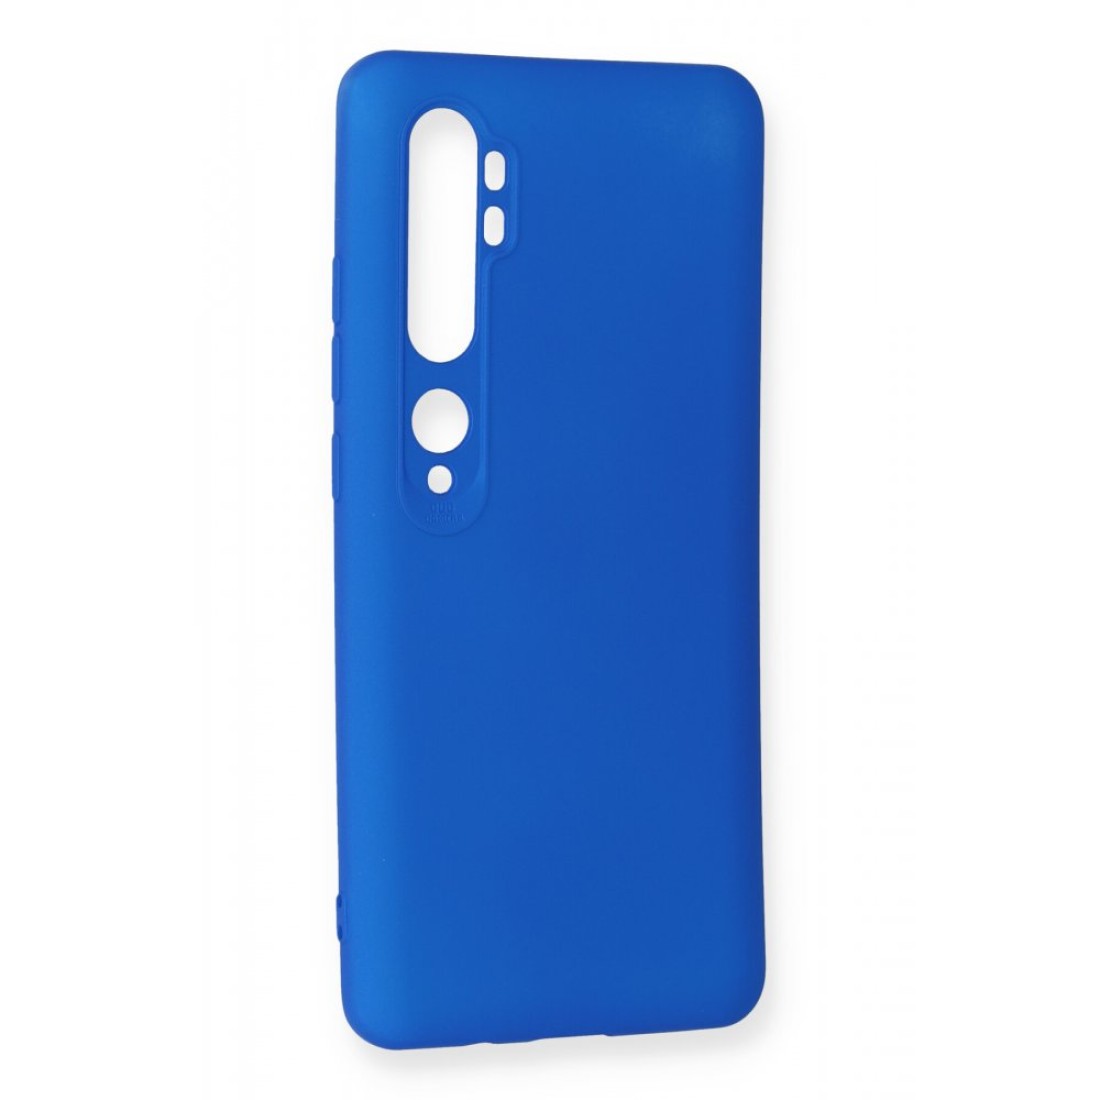 Xiaomi Mi Note 10 Pro Kılıf Premium Rubber Silikon - Mavi